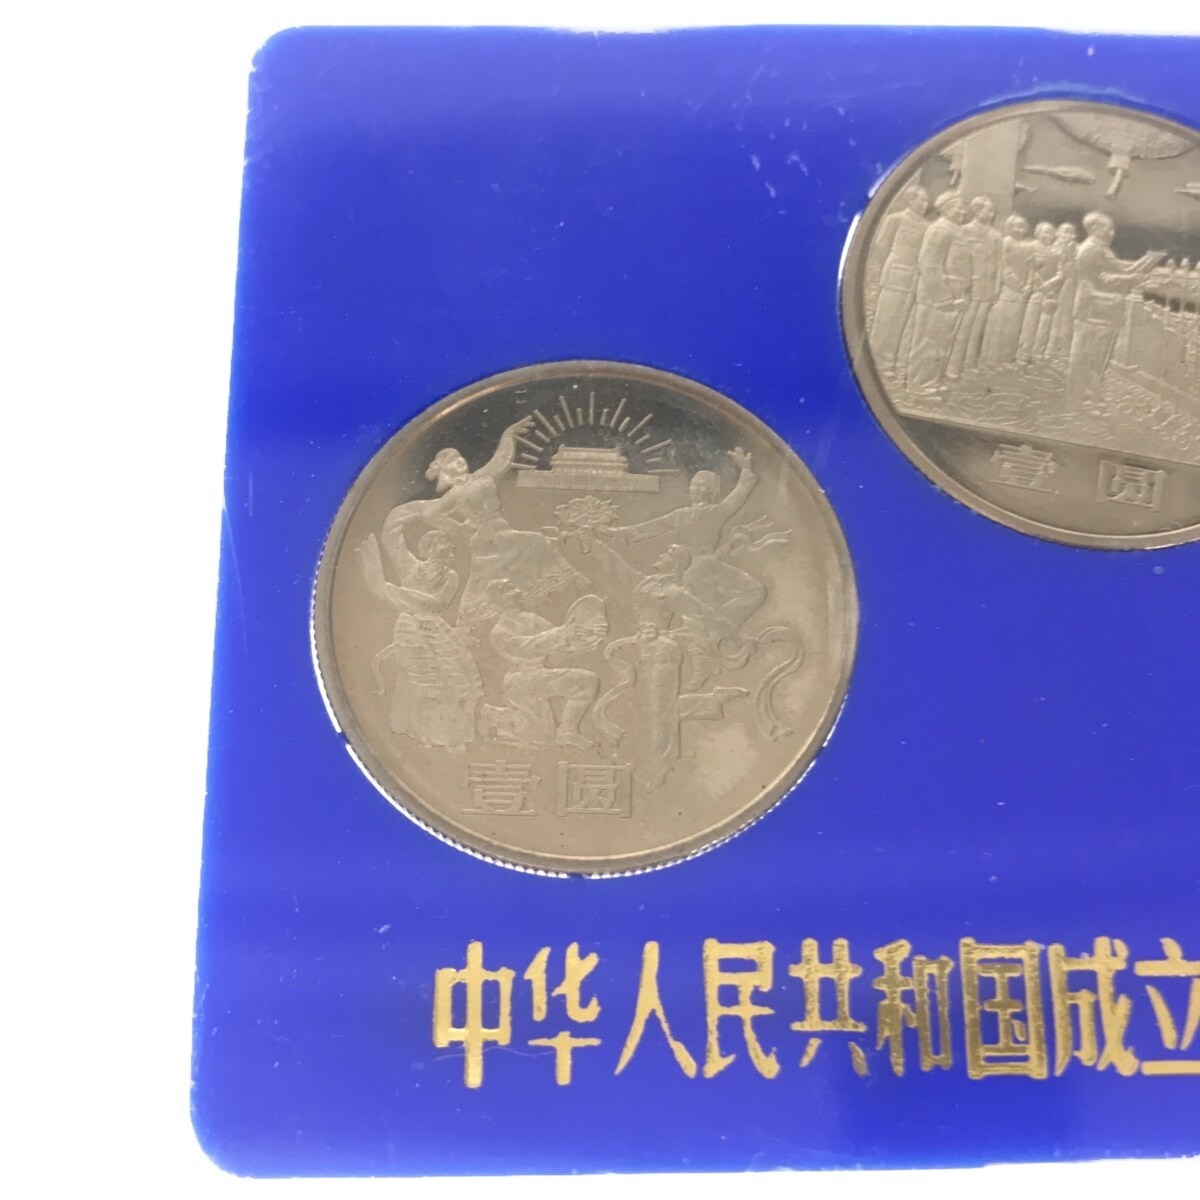 【希少品】中華人民共和国成立35周年 一円白銅貨 記念貨幣セット 1949-1984 3種セット 中国コイン 中国人民銀行 中国造幣谷司 限定品 M661_画像3